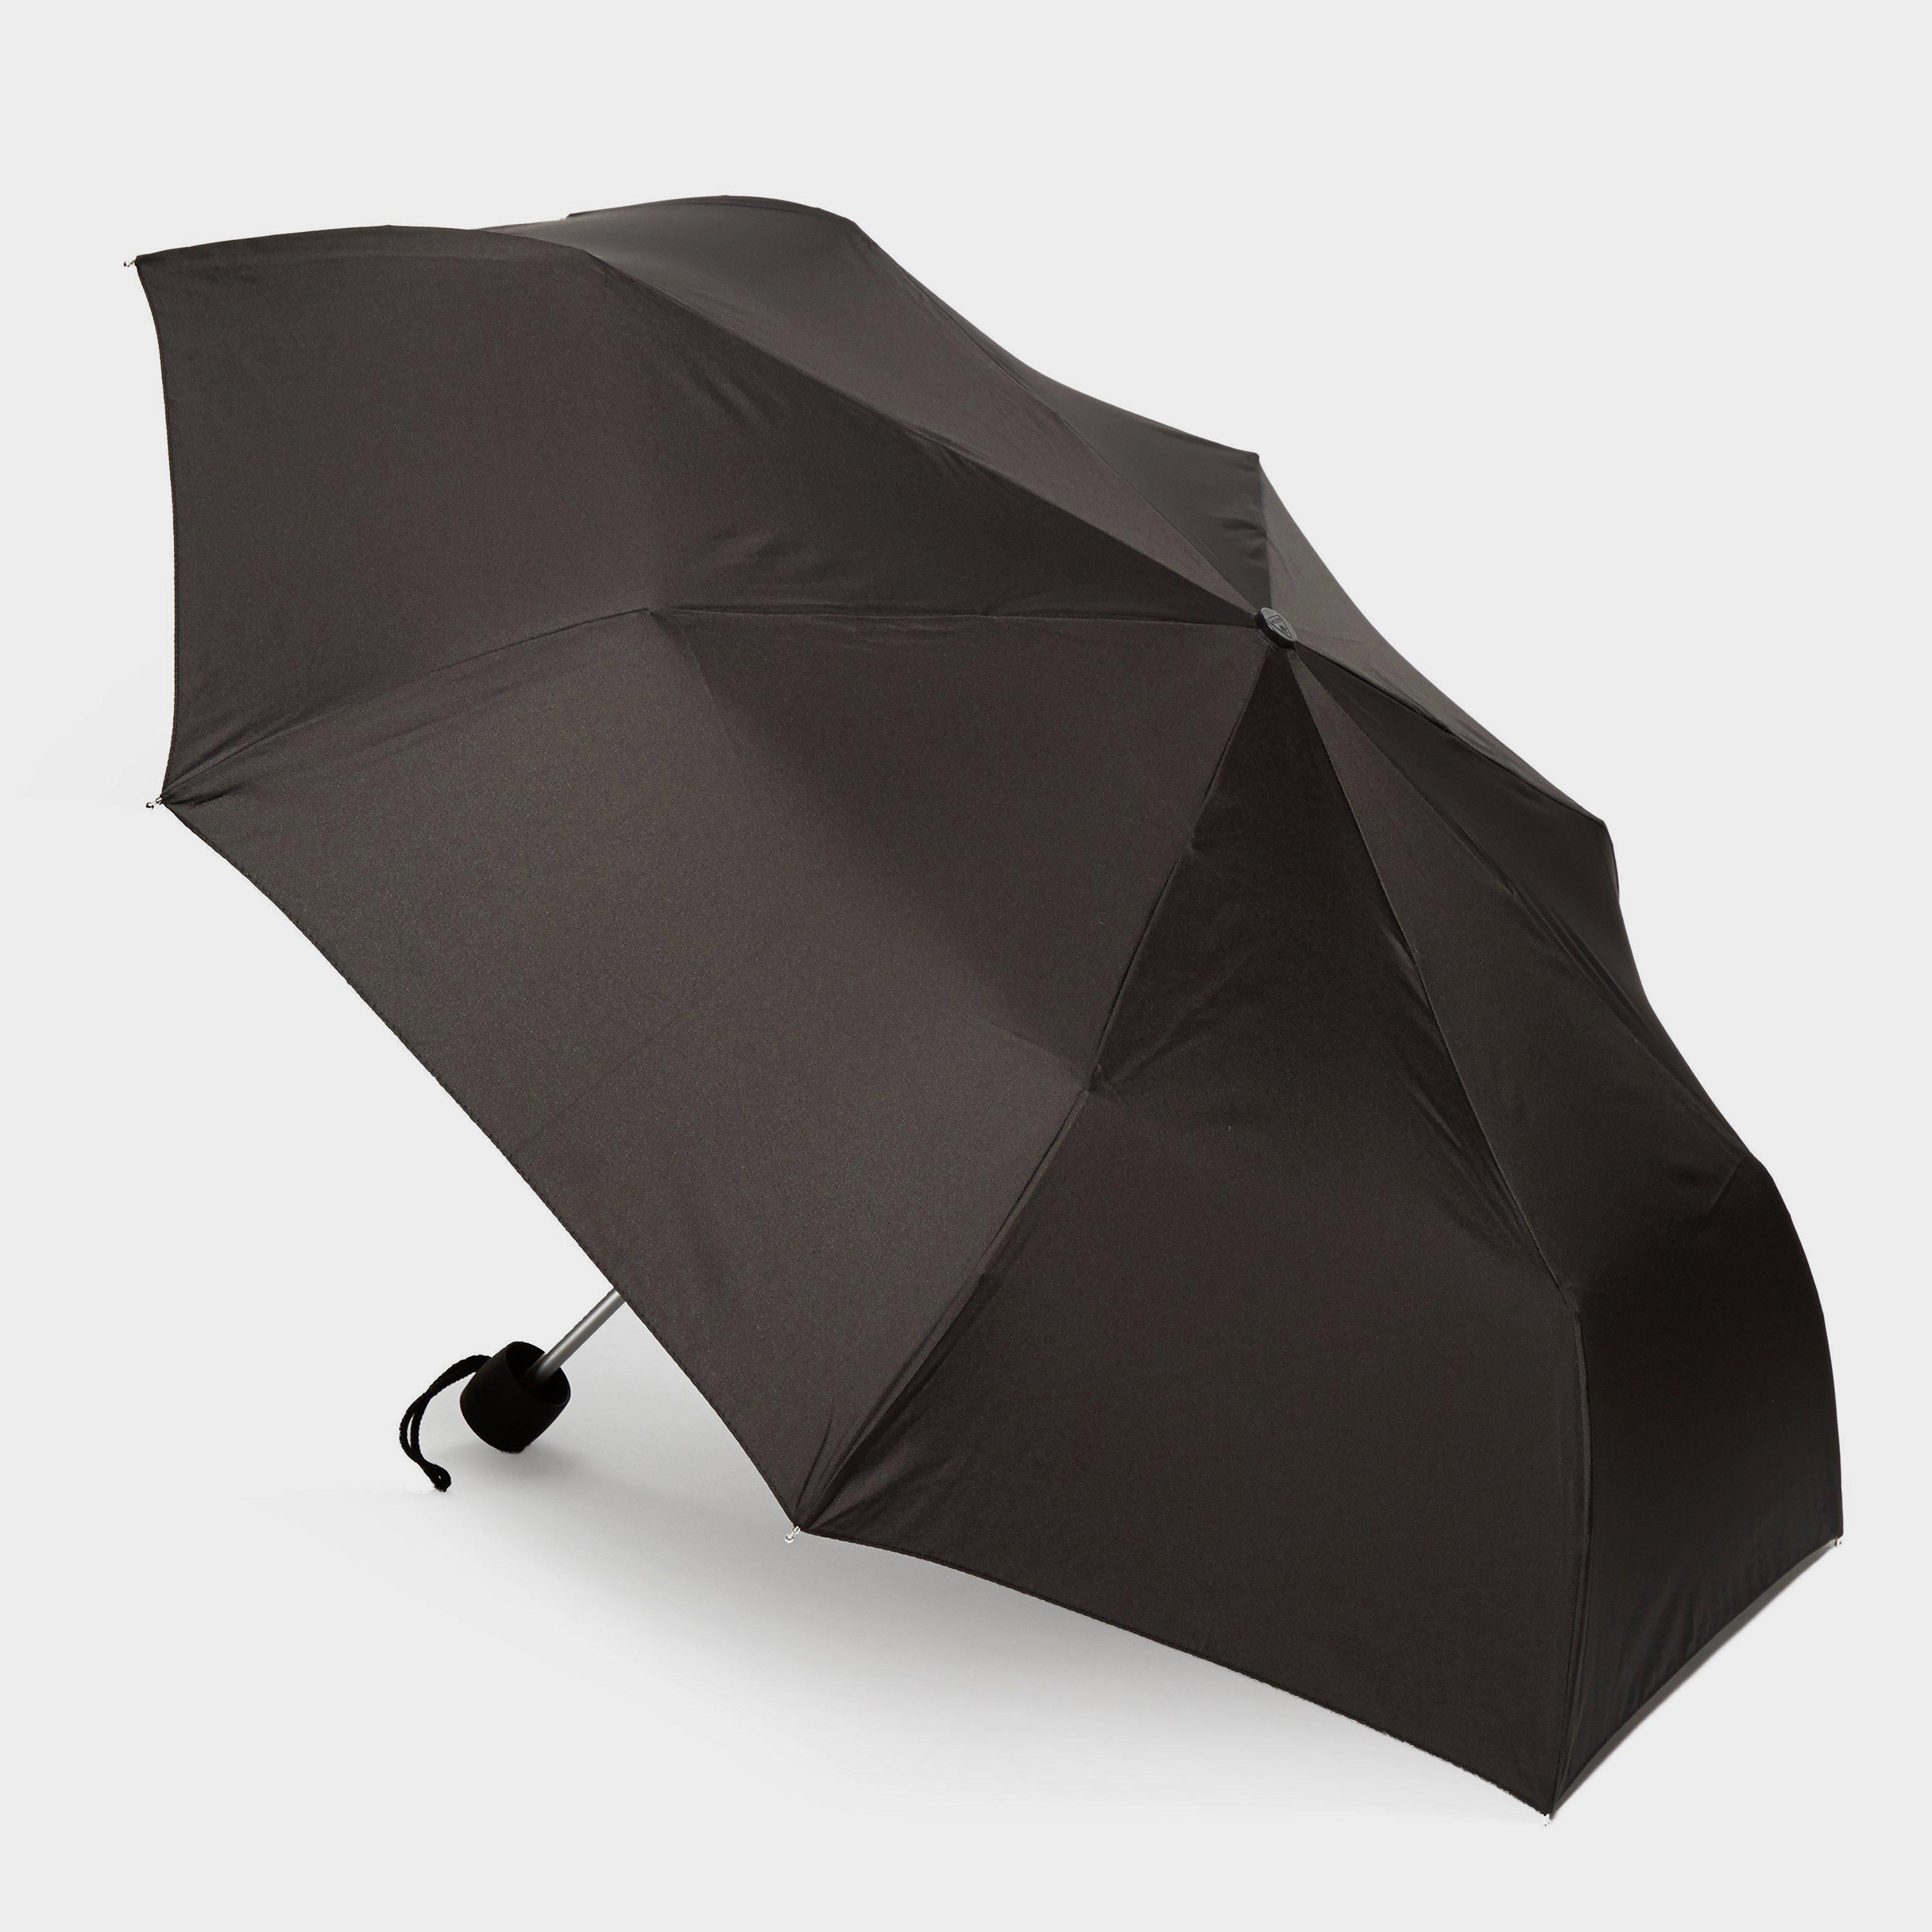 Image of Fulton Minilite 1 Umbrella - Black/Blk, black/BLK